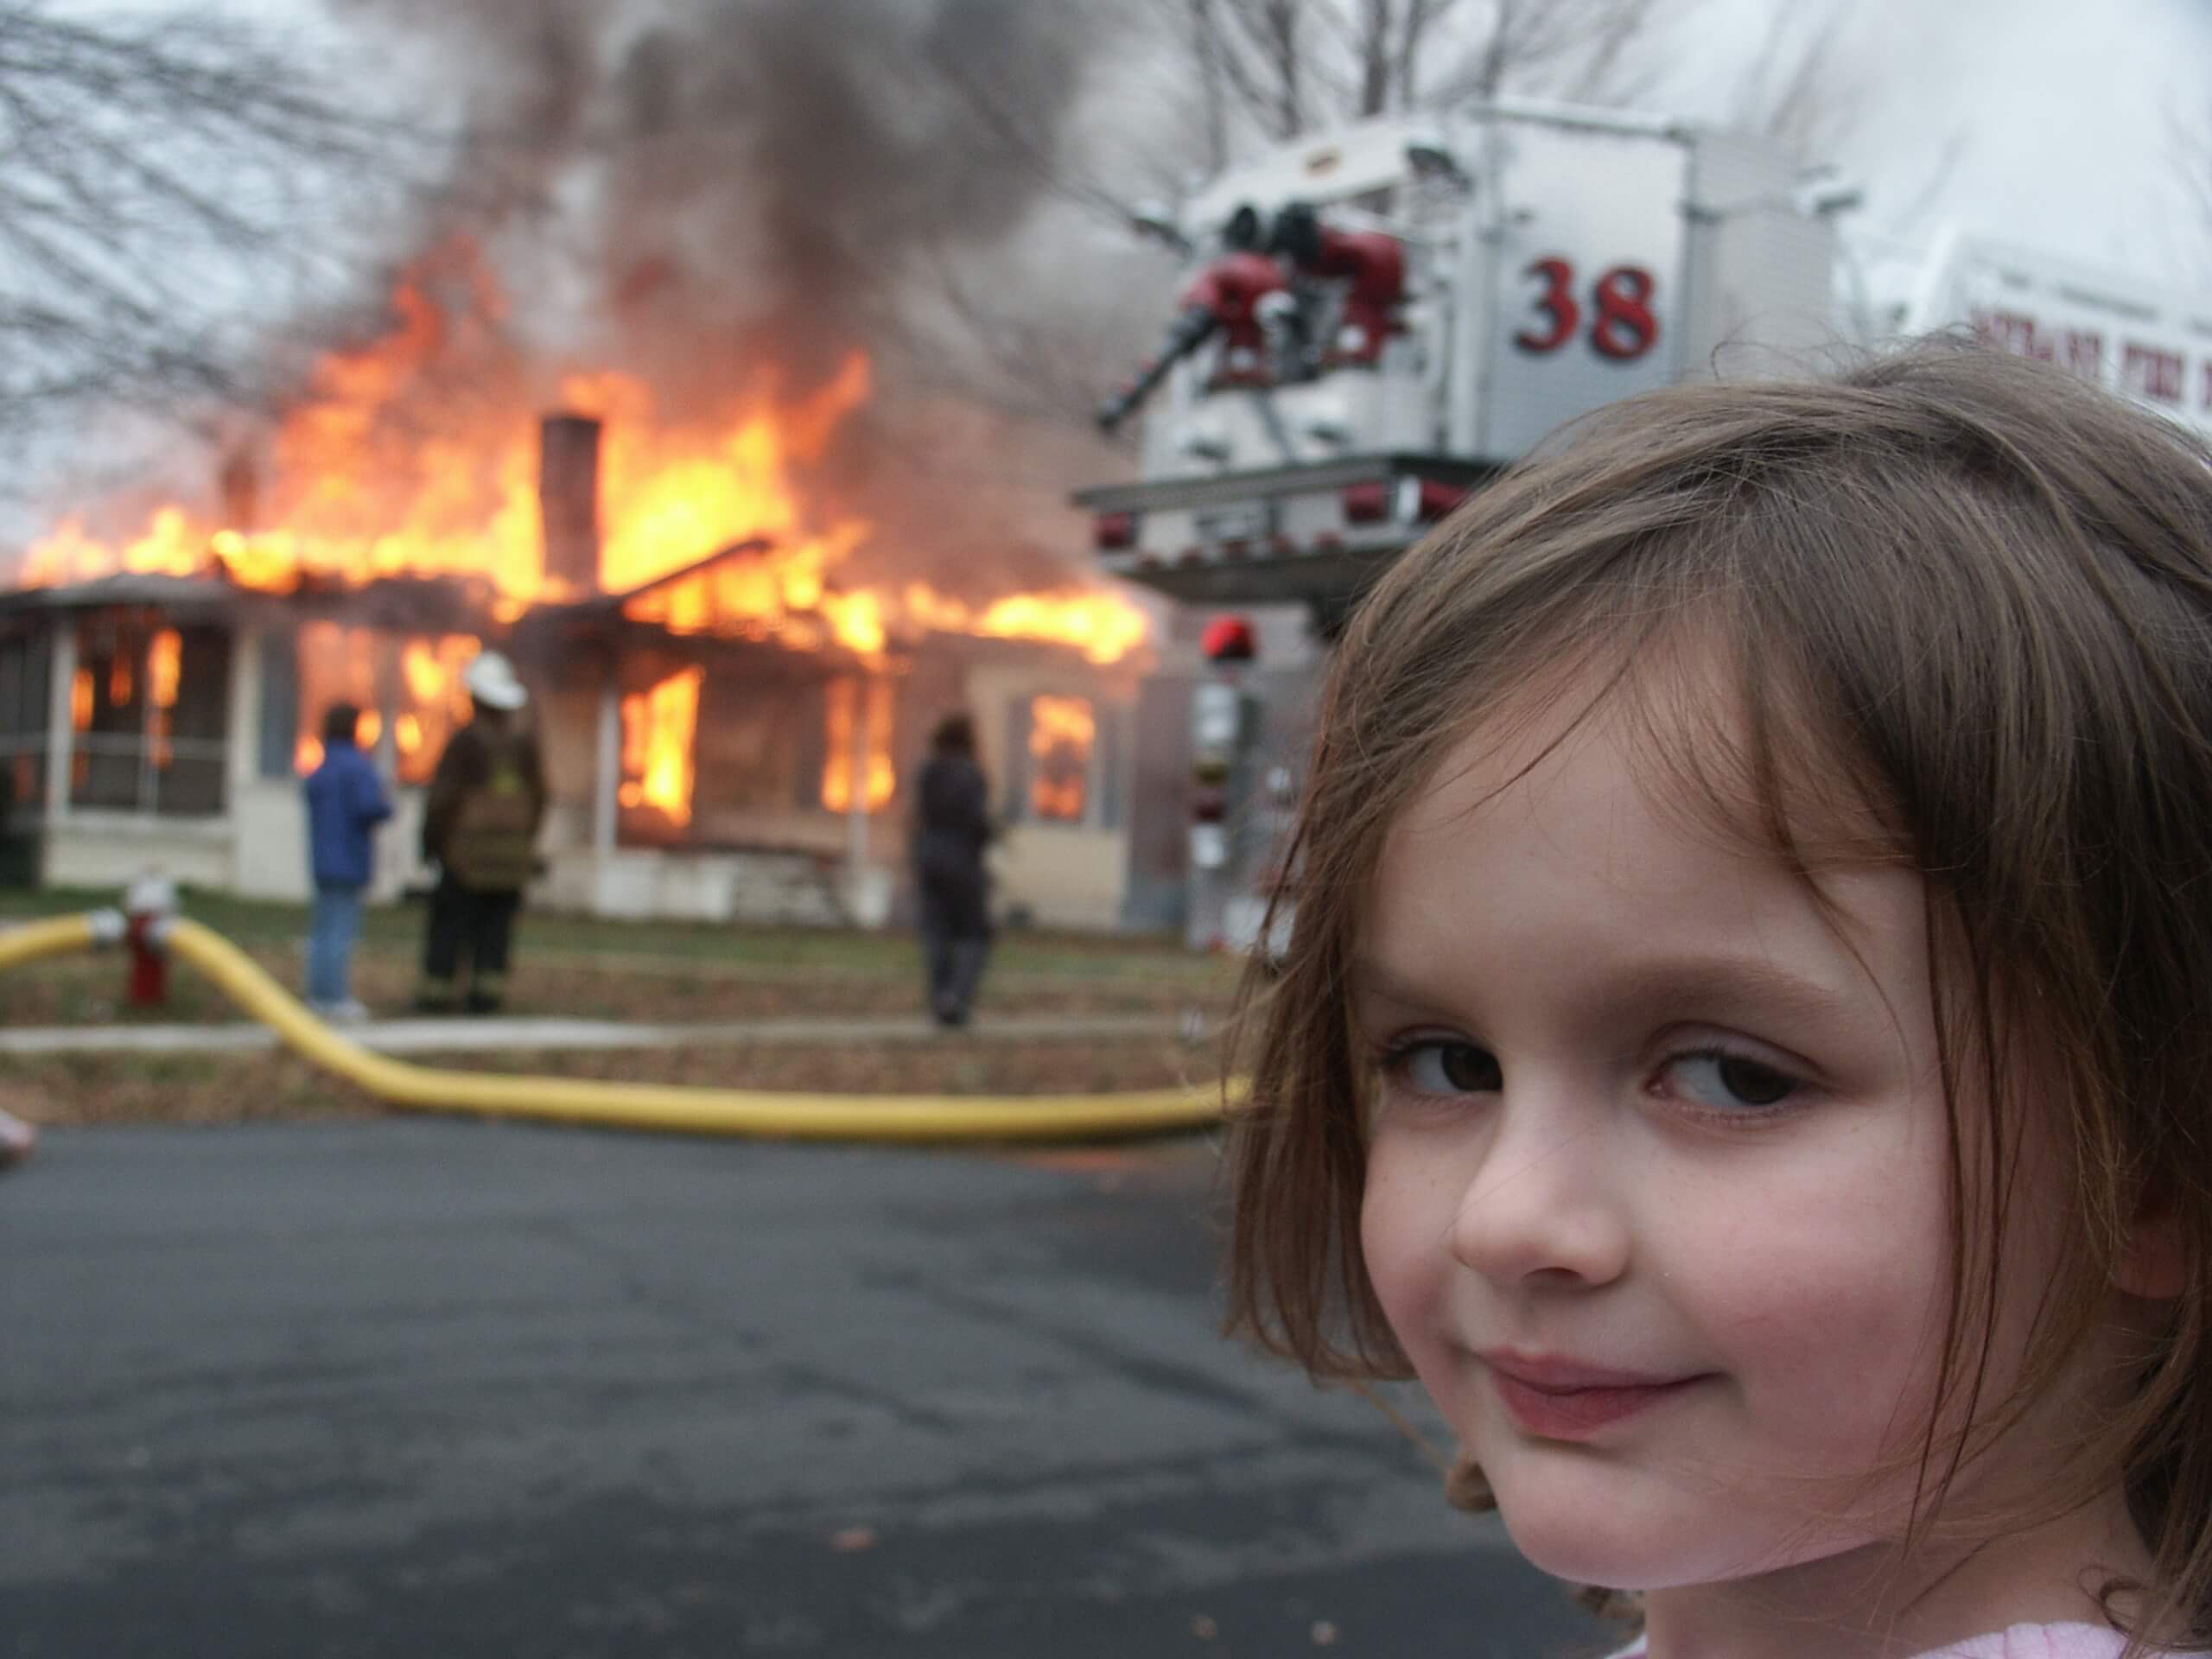 Menina olha diretamente para a câmera com olhar maléfico enquanto uma casa em chamas é socorrida pelos bombeiros.